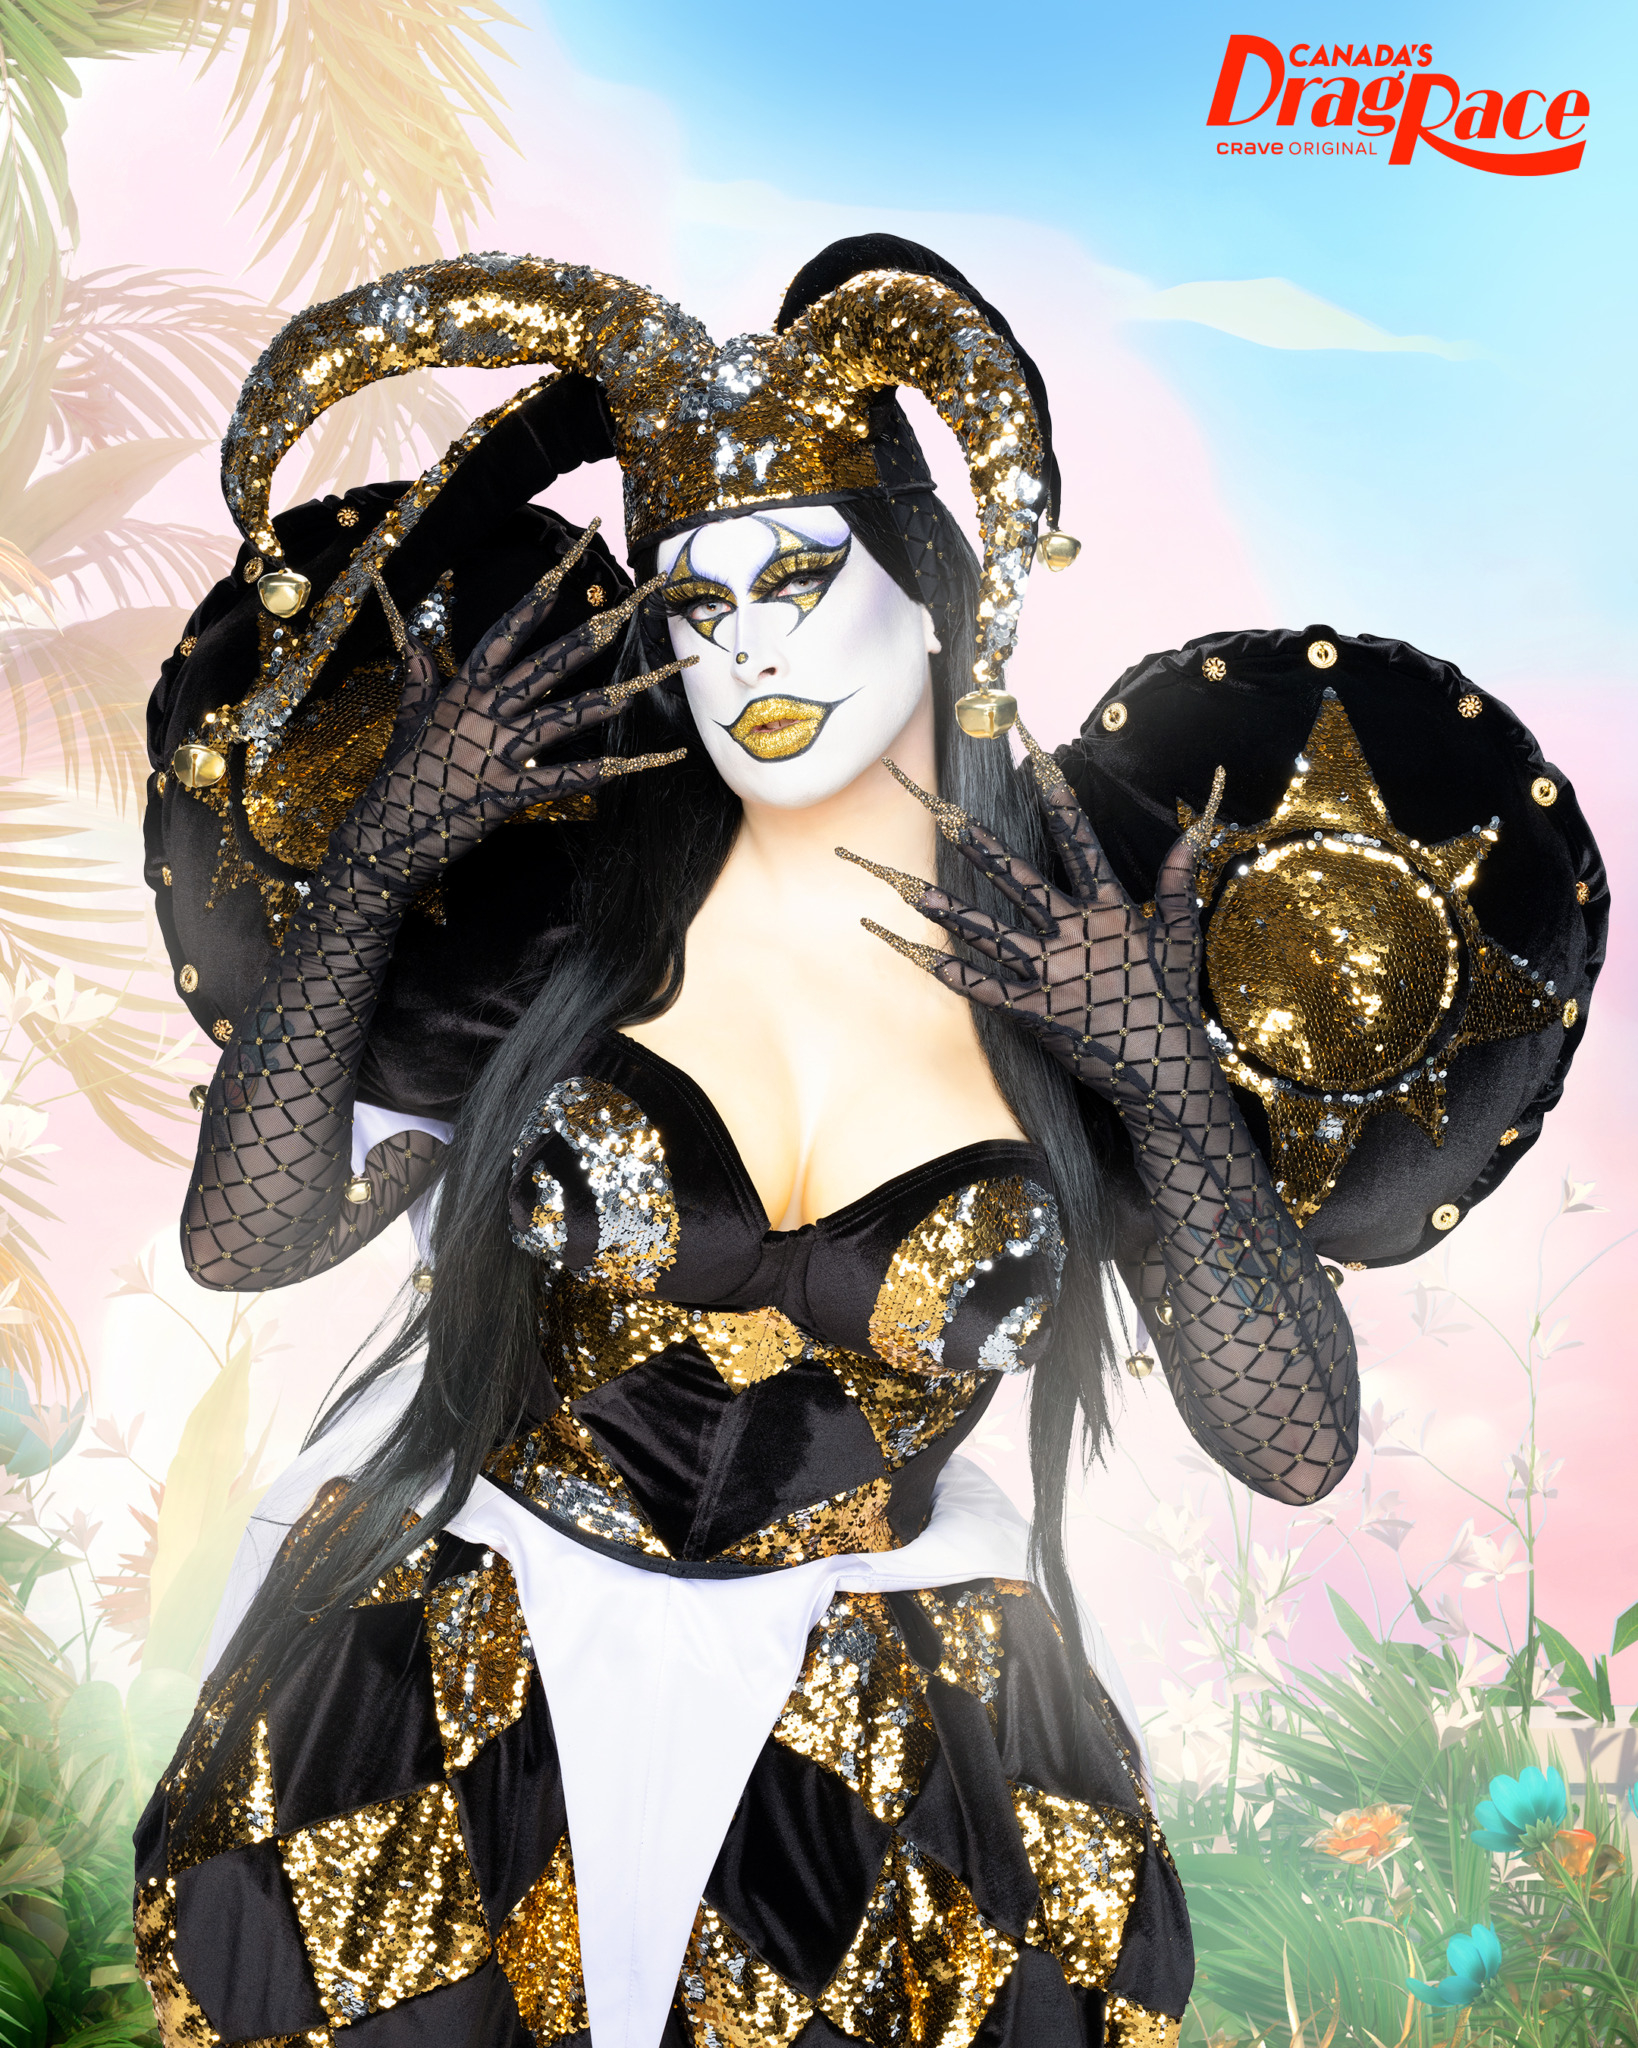 Sisi Superstar drag queen.